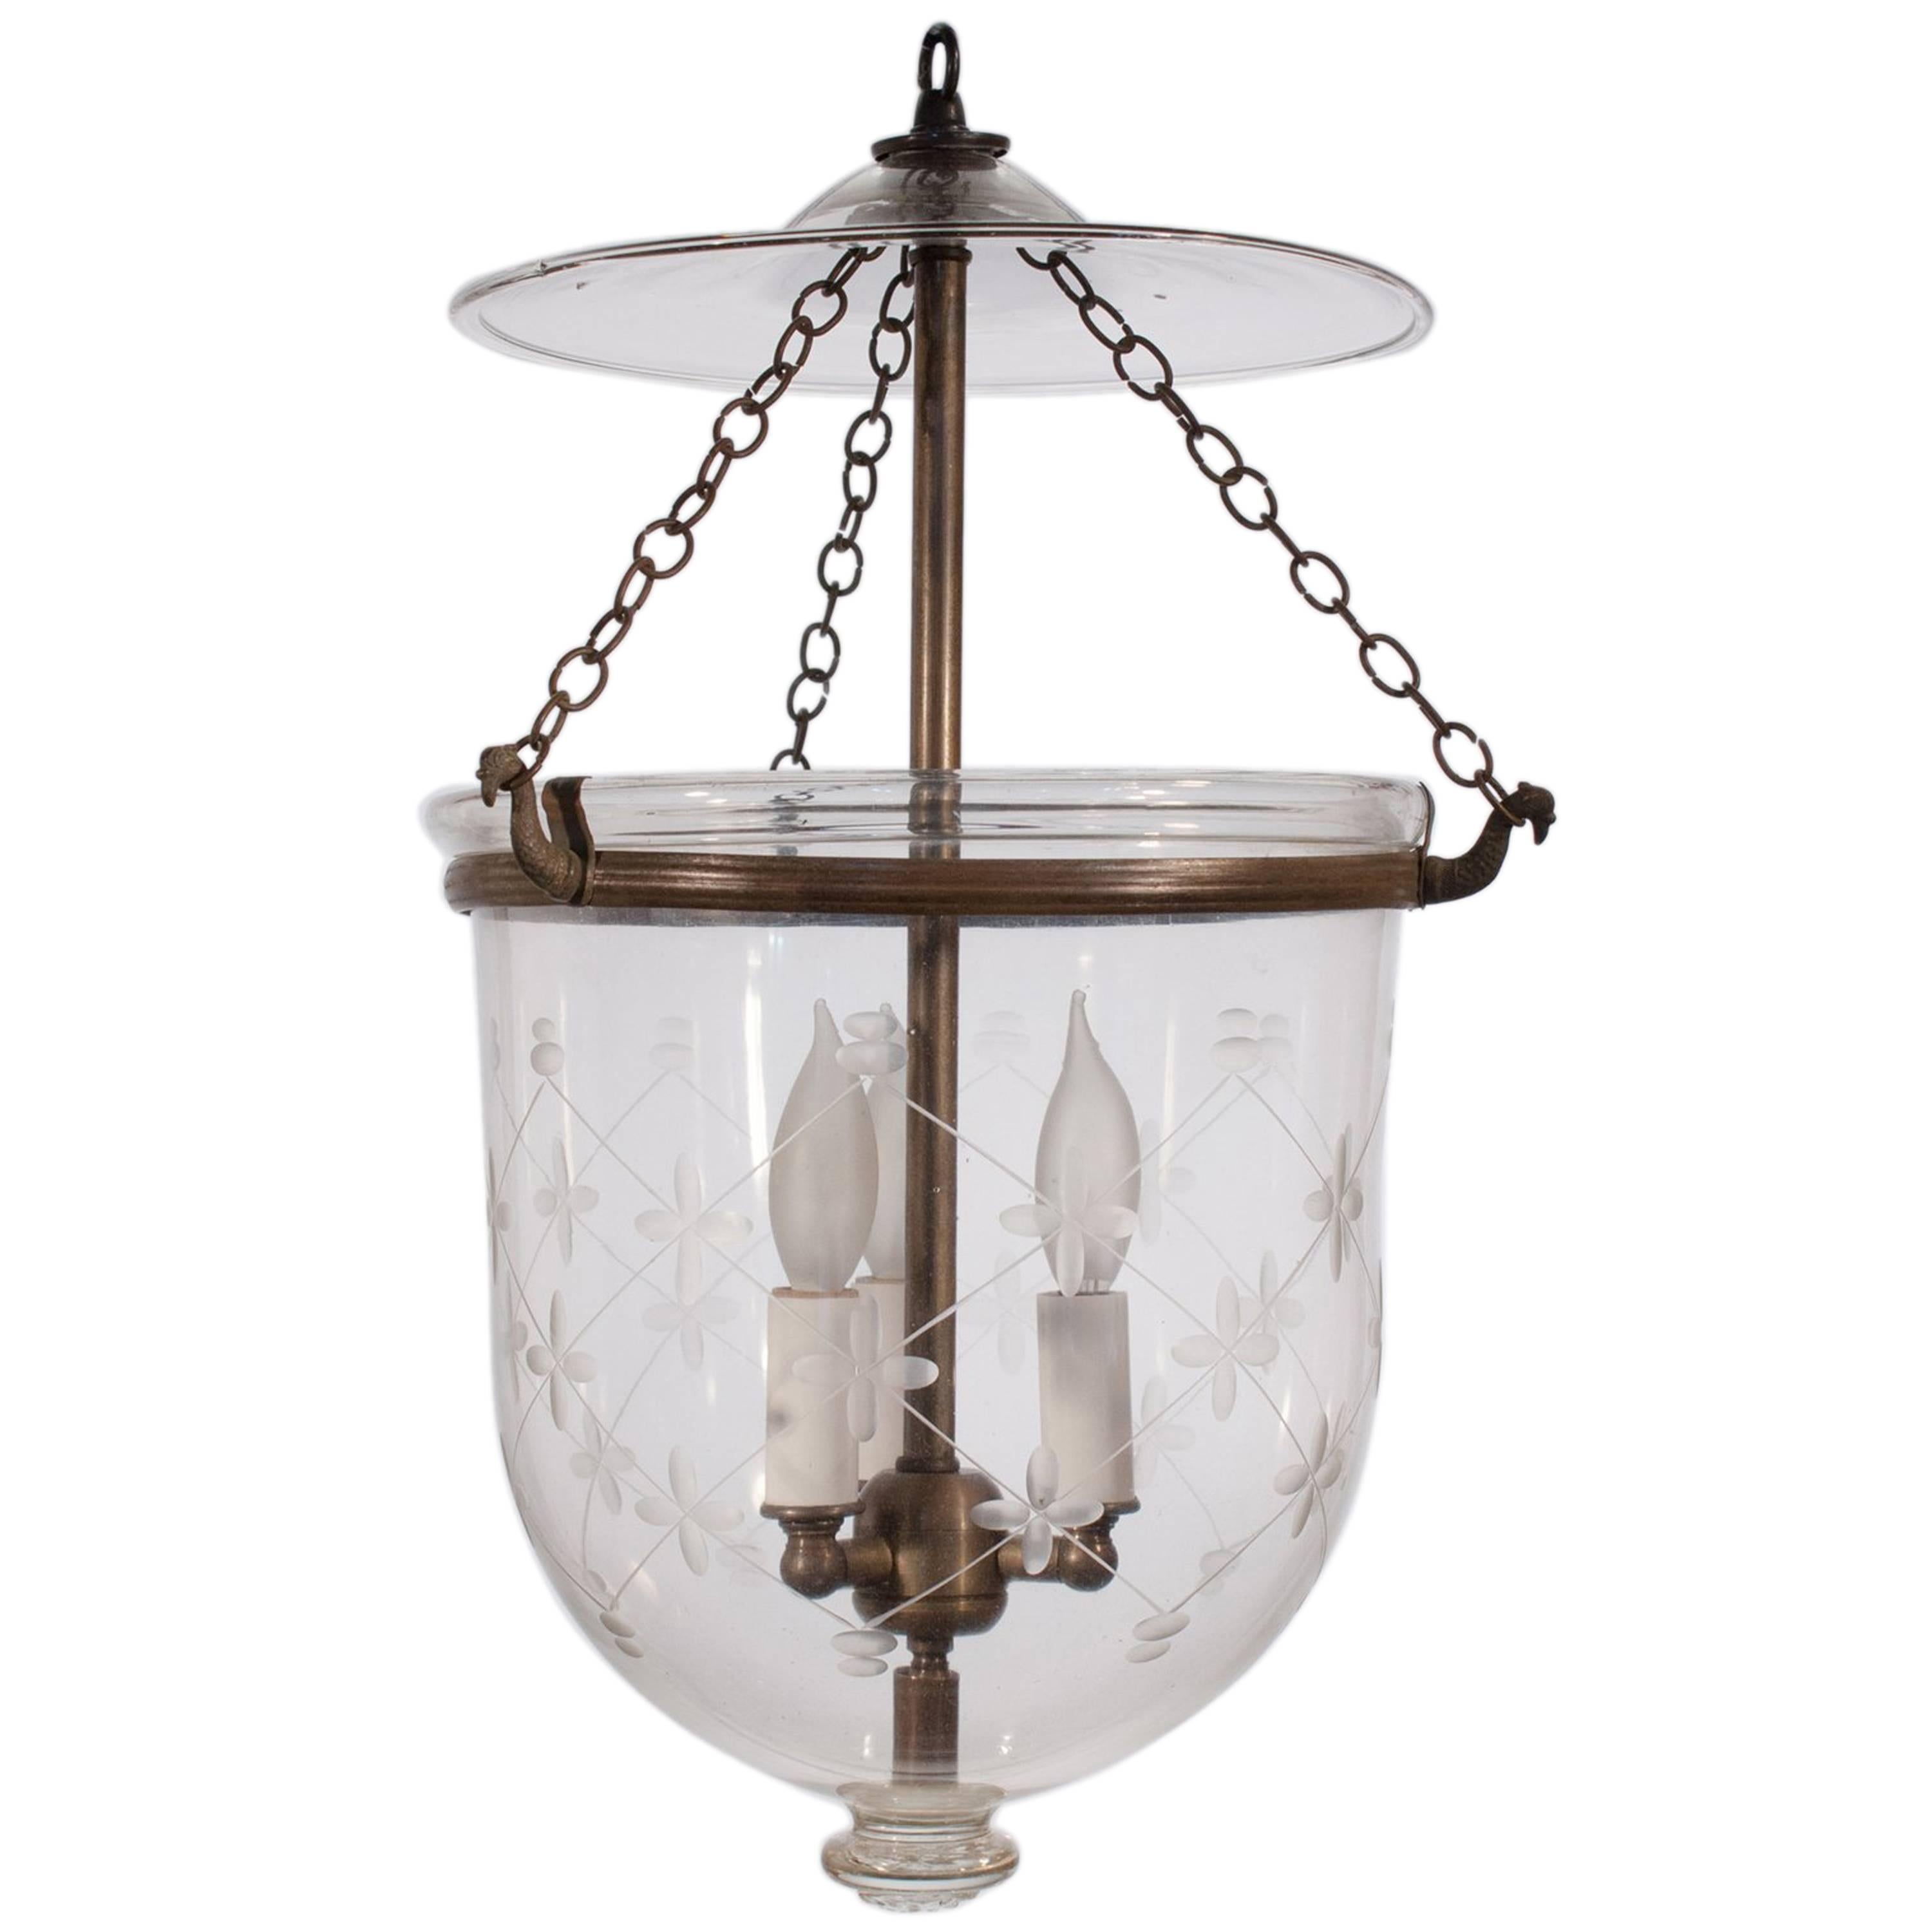 English Bell Jar Lantern with Etched Trellis Motif